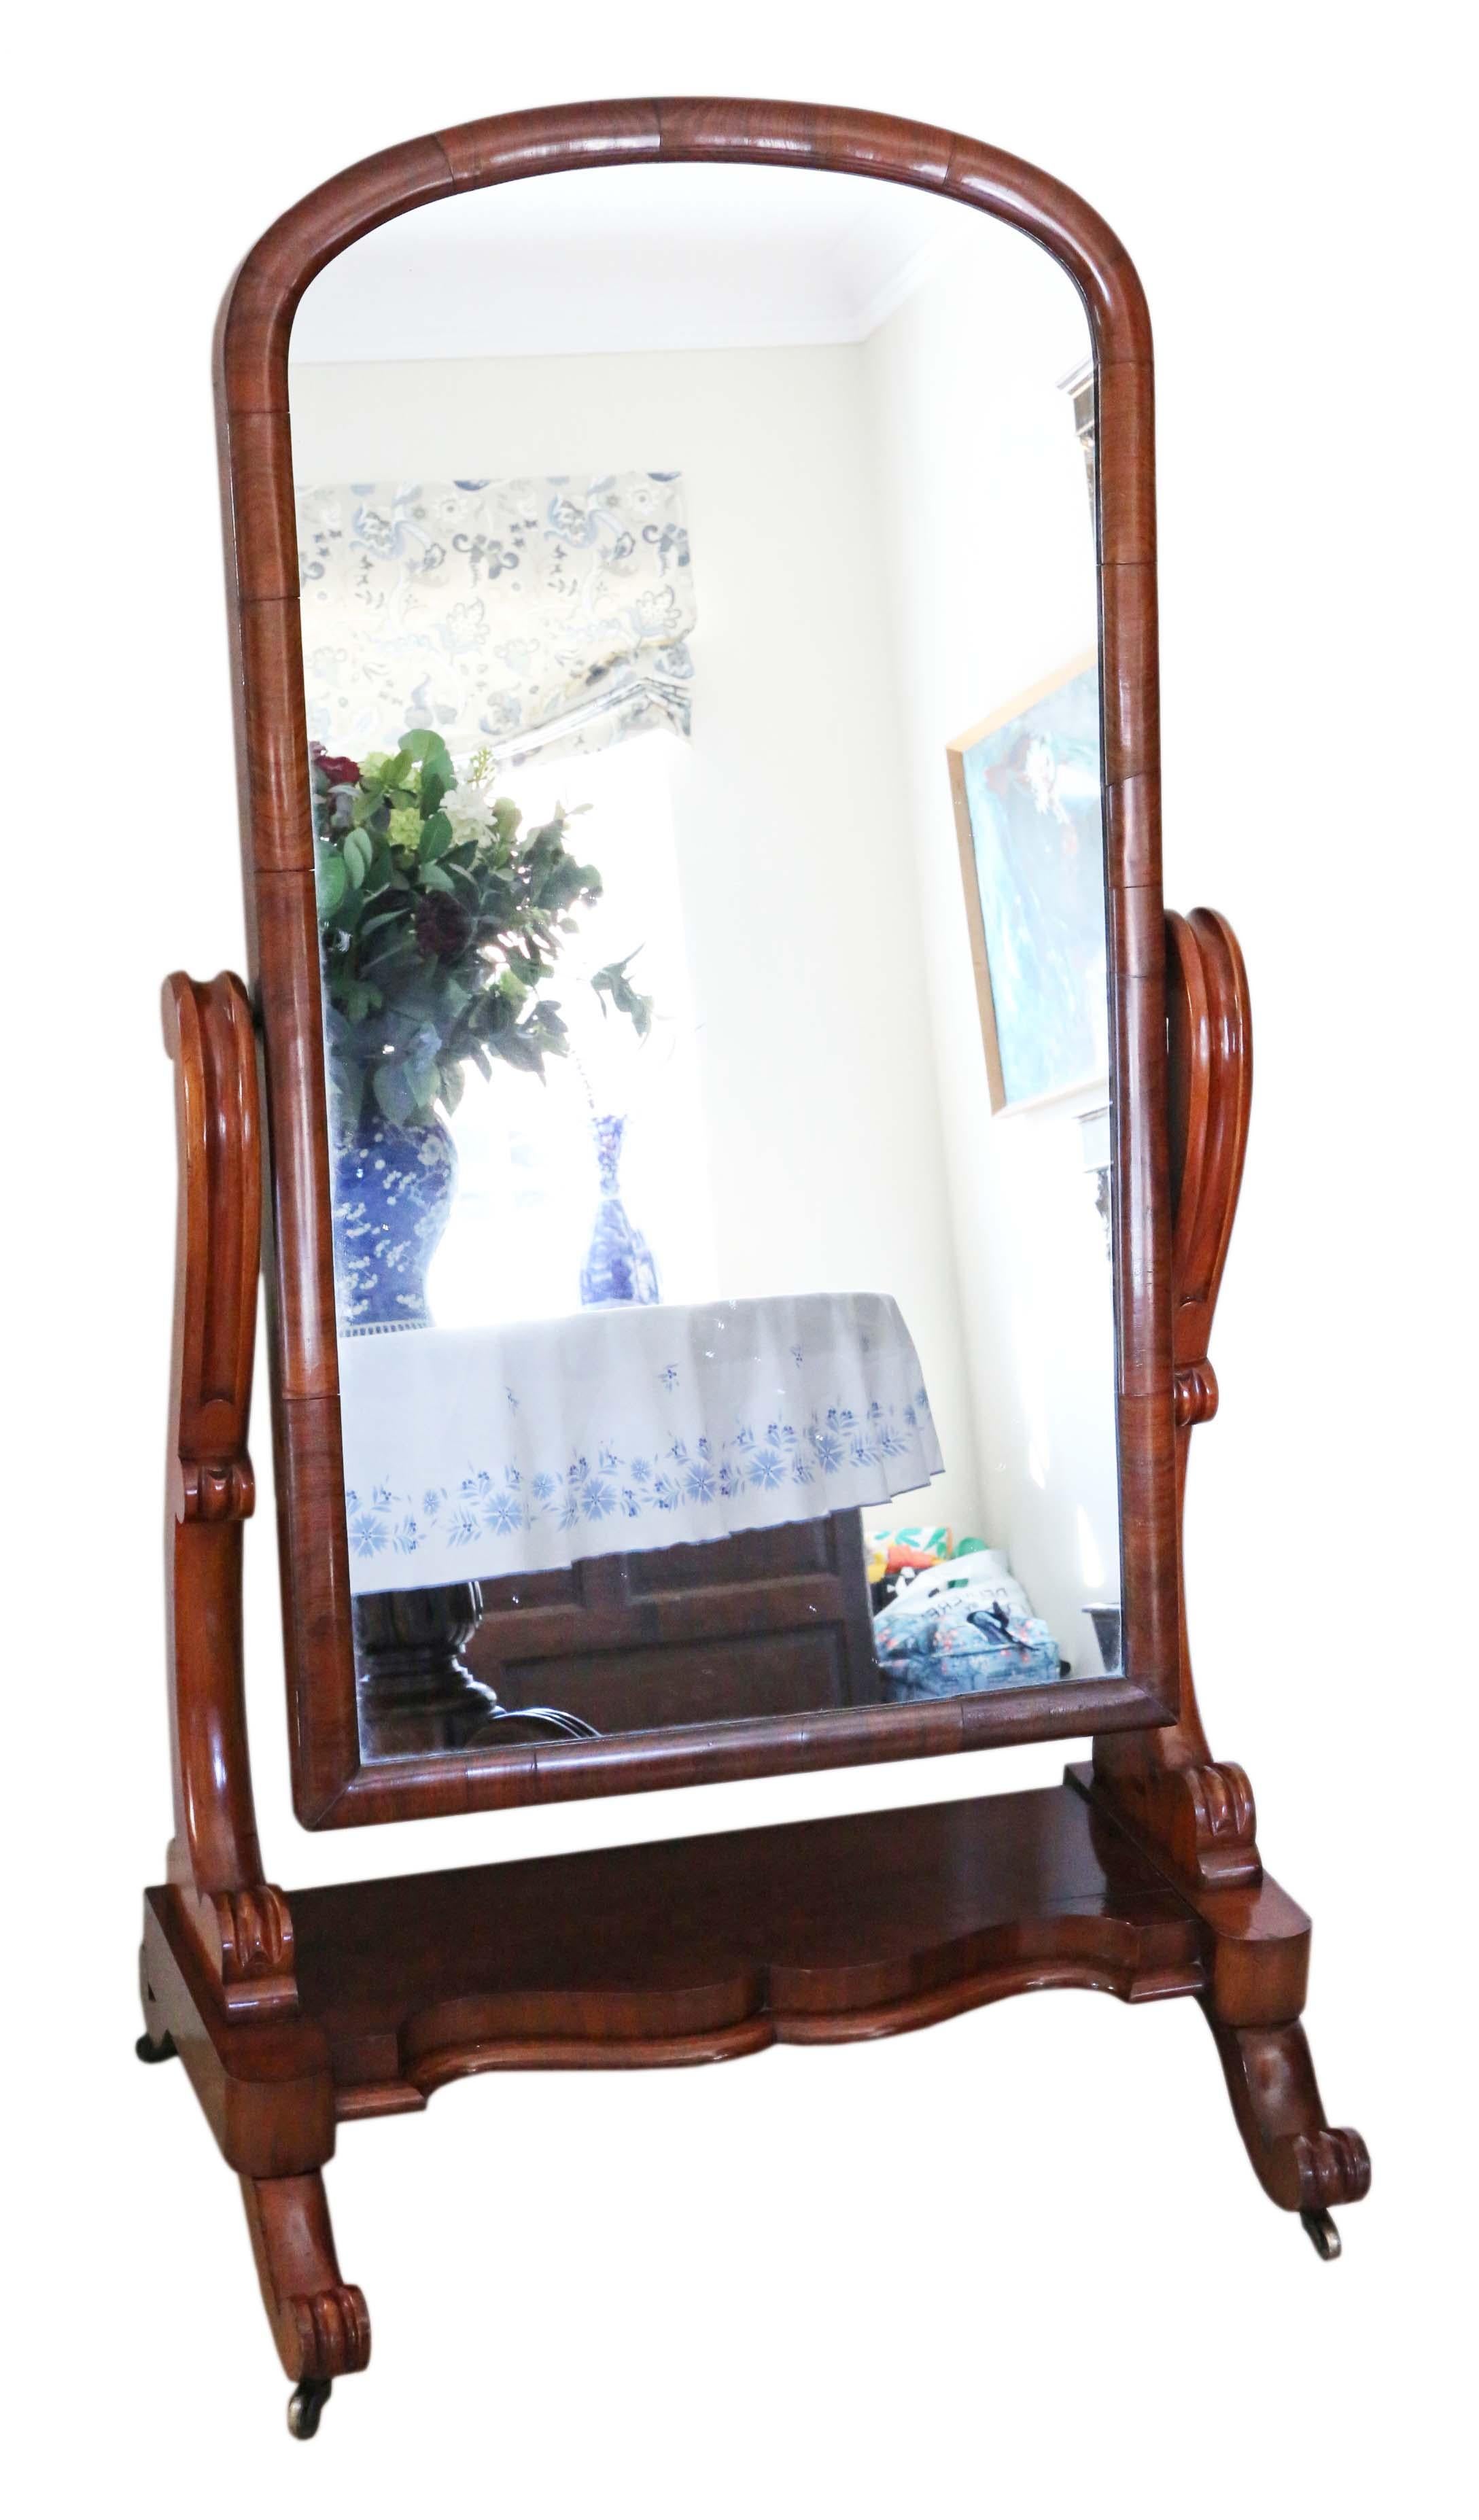 Antike viktorianische 19. Jahrhundert Qualität Mahagoni Cheval Spiegel C1870.

Ein beeindruckender Fund, der an der richtigen Stelle fantastisch aussehen würde. Keine losen Fugen oder Holzwürmer.

Das verspiegelte Glas ist in sehr gutem Zustand